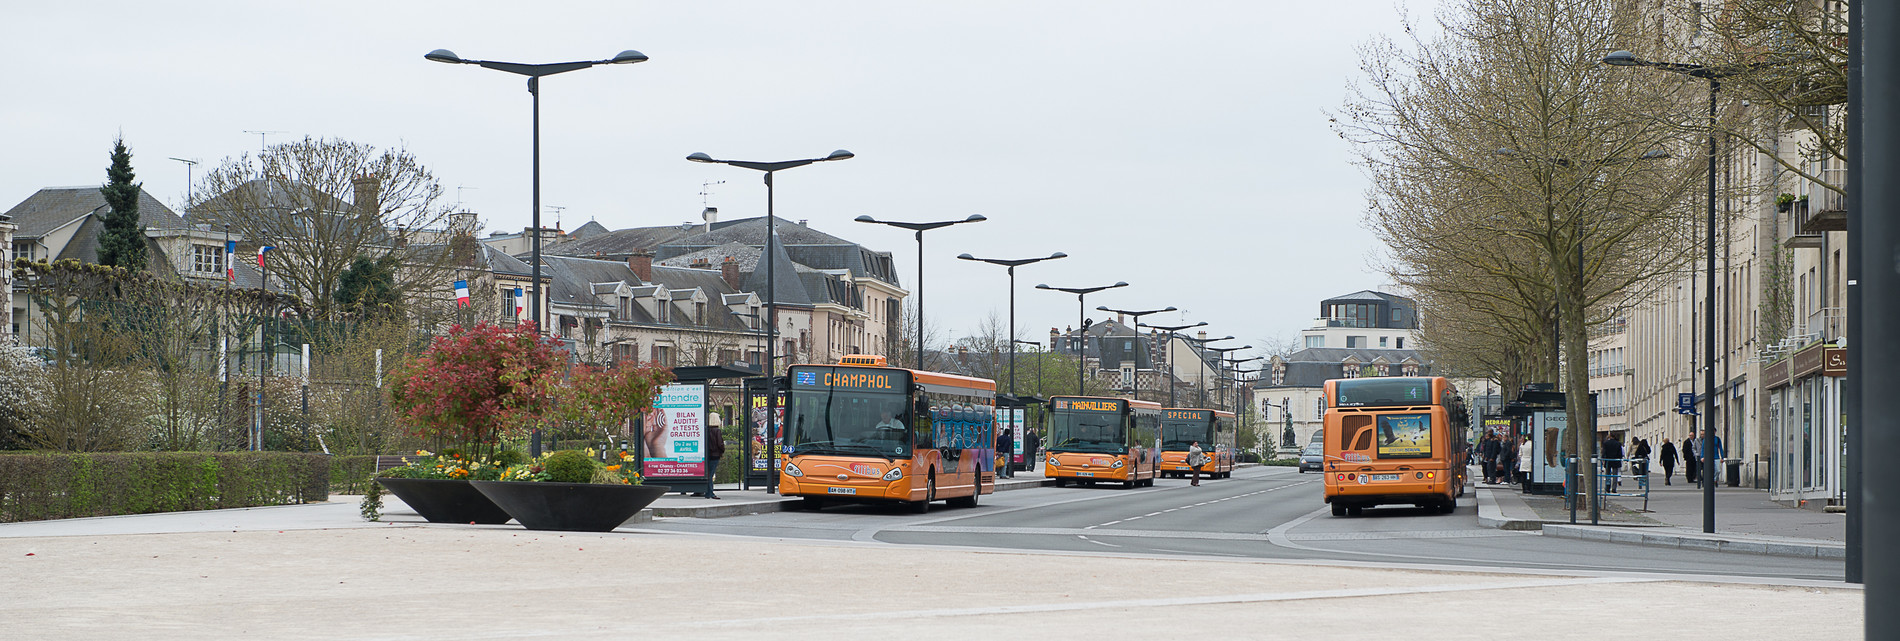 Transports urbains et périurbains – Ville de Chartres